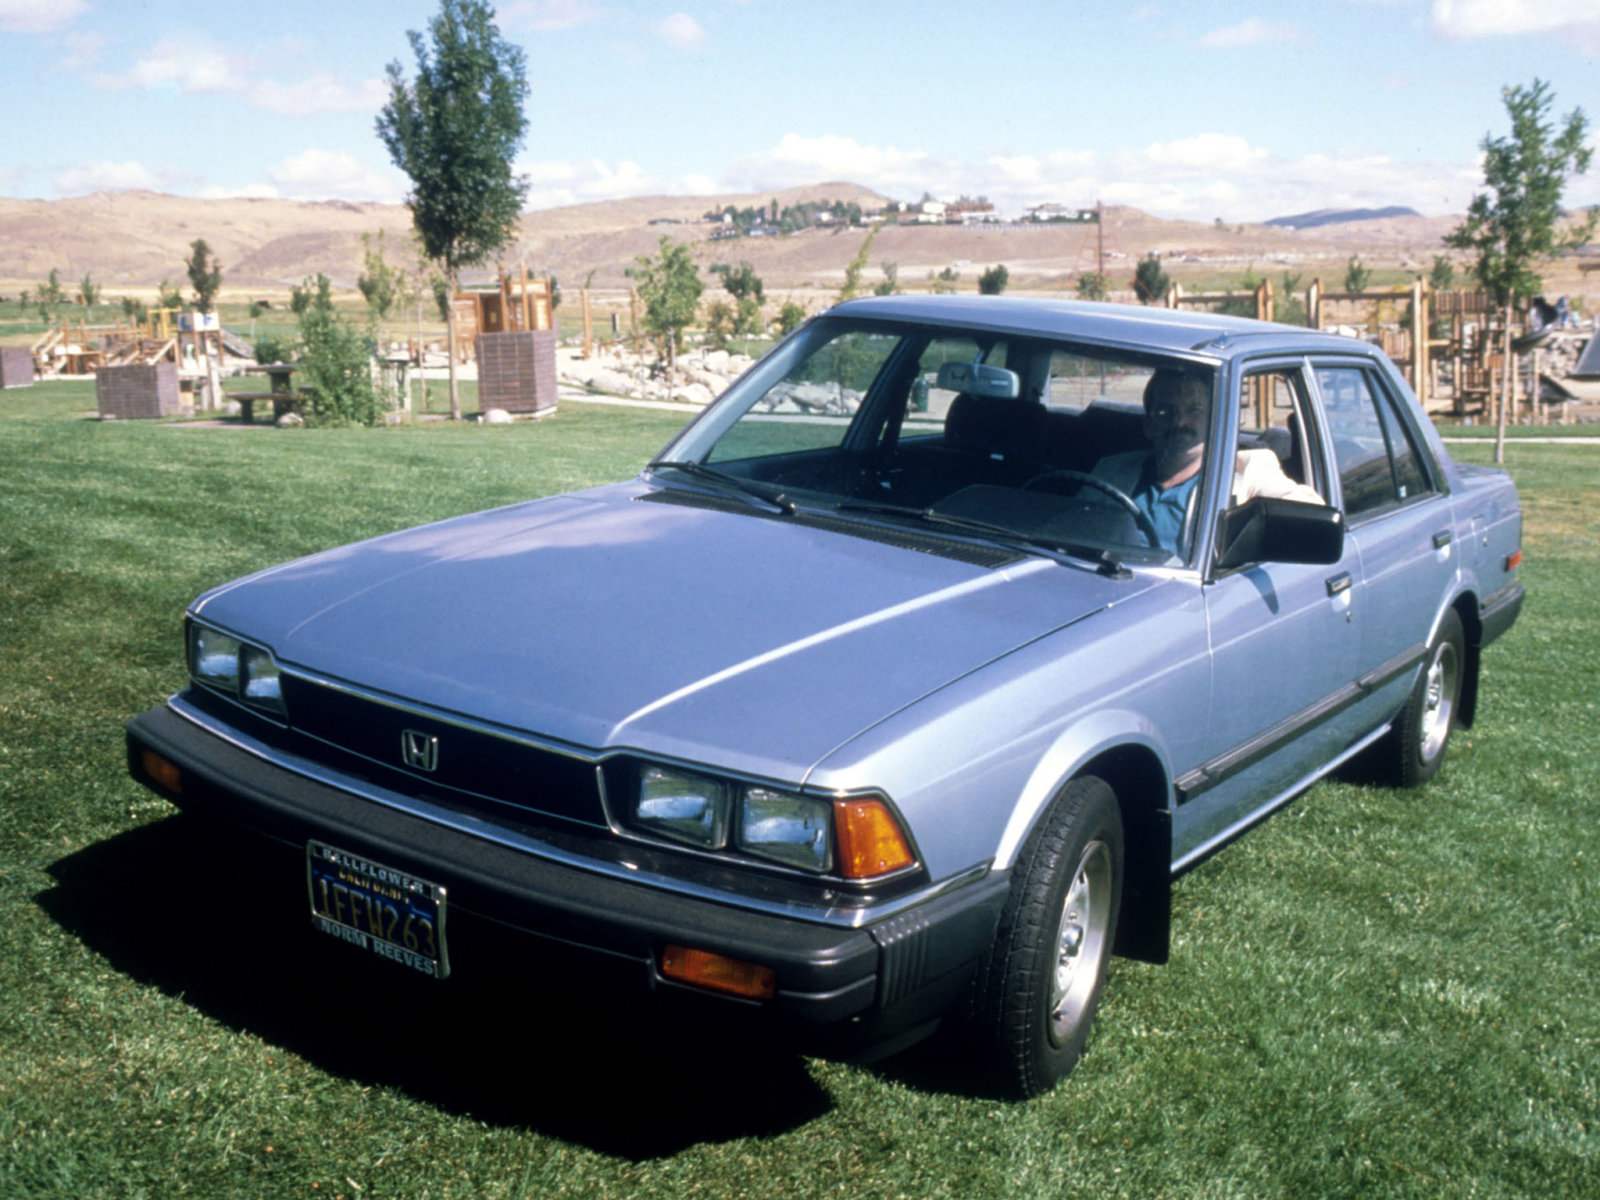 Honda Accord II 1981 юда. выпускавшаяся в Америке (штат Огайо), навоевала титул лучшею японского автомобиля в Европе. Машина имела впрысковый 1,8-литровый мотор, ABS, систему круиз-контроля, автоматическую КПП и систему регулировки клиренса